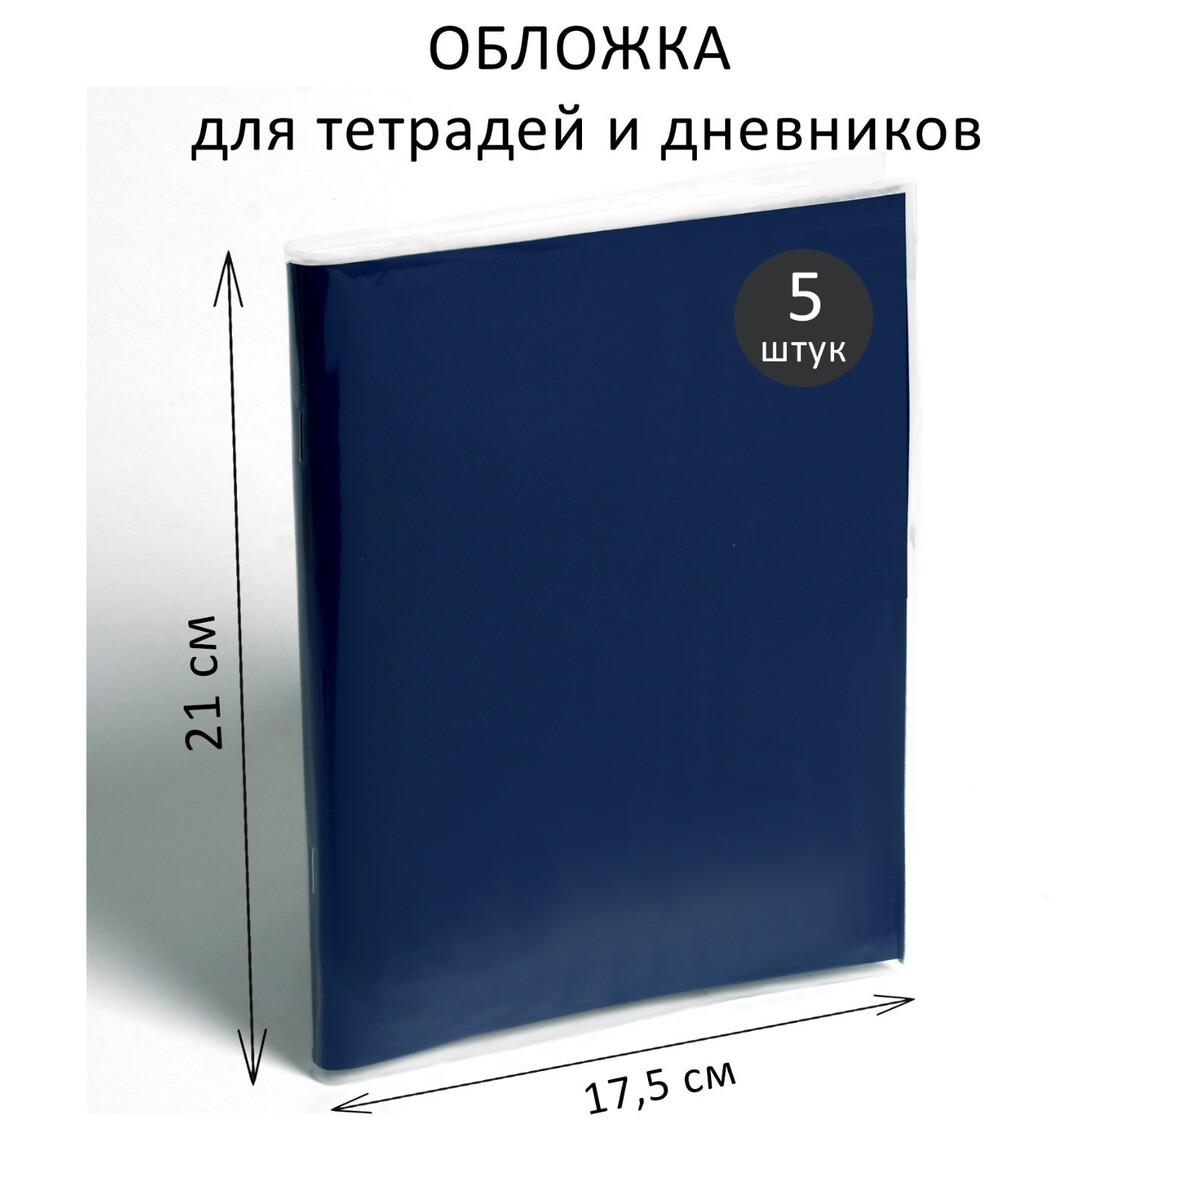 Набор обложек пэ 5 штук, 210 х 350 мм, 80 мкм, для тетрадей и дневников (в мягкой обложке) предметные наклейки для тетрадей набор 2 штуки в пэт пакете русский язык